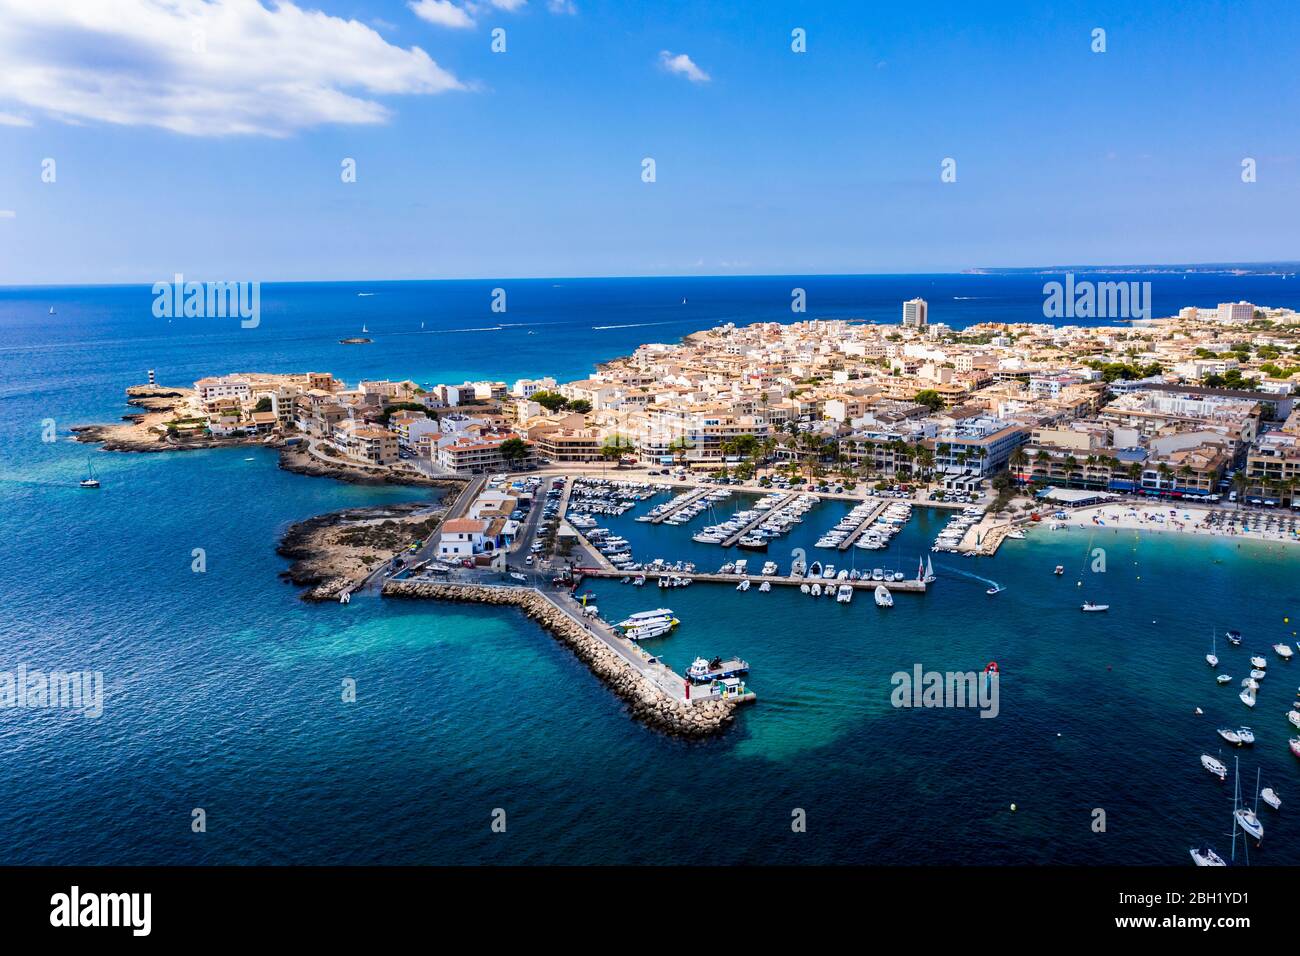 España, Islas Baleares, Colonia de Sant Jordi, Vista aérea de la ciudad costera con línea de horizonte clara sobre el Mar Mediterráneo en el fondo Foto de stock